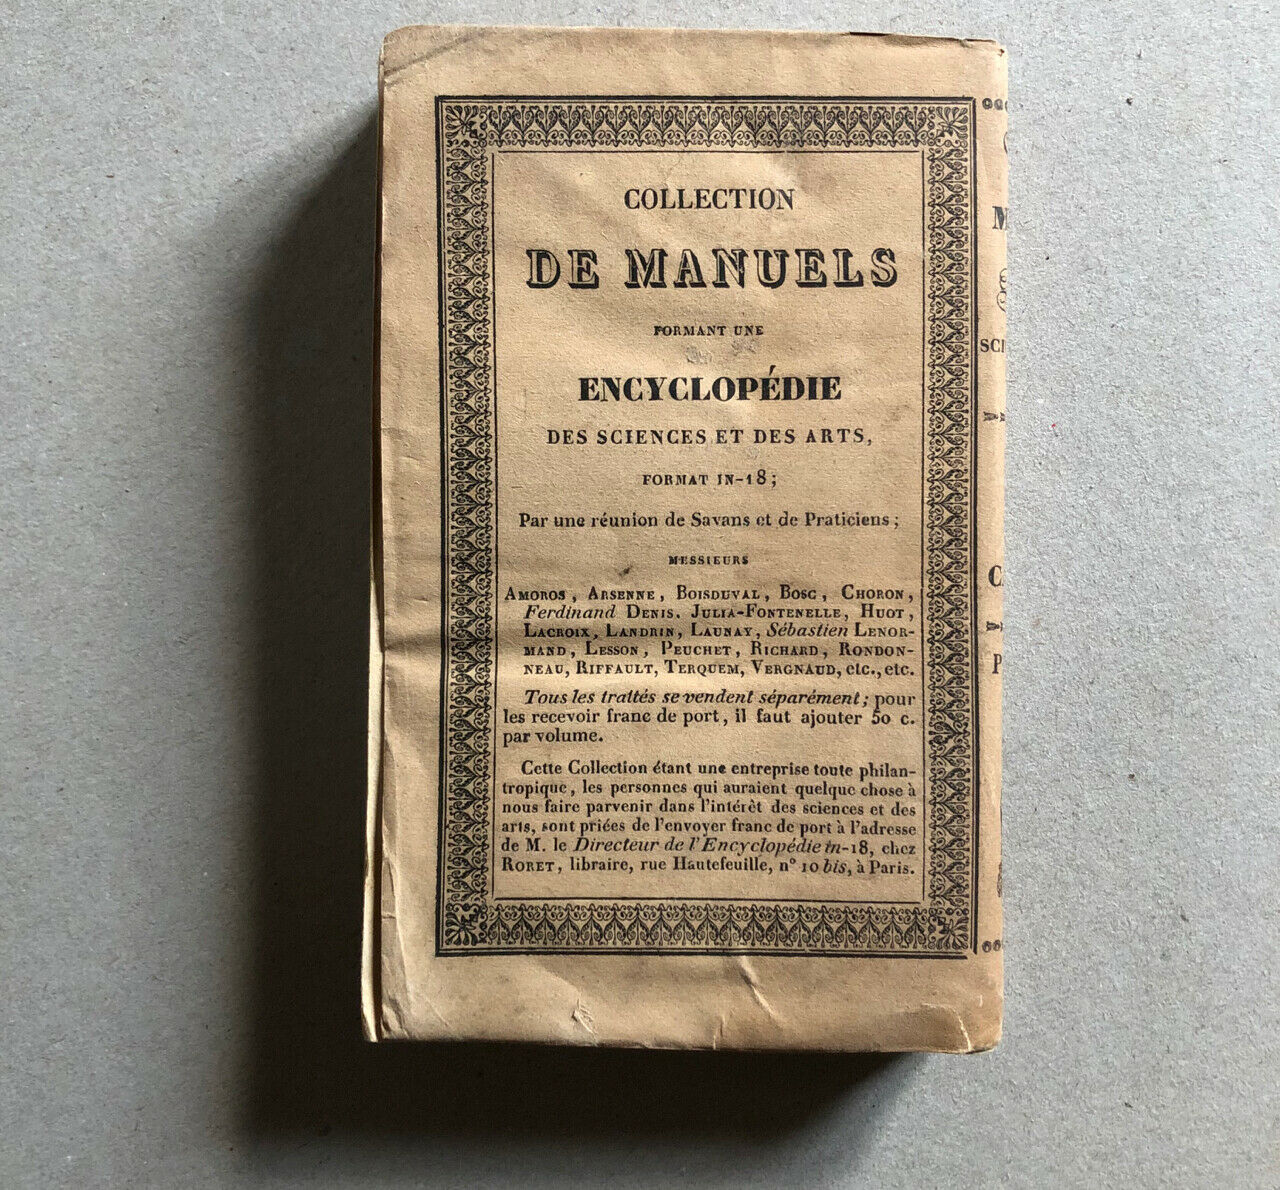 Celnart — Manuel des habitans de la campagne — 2de édition — Roret — 1834.